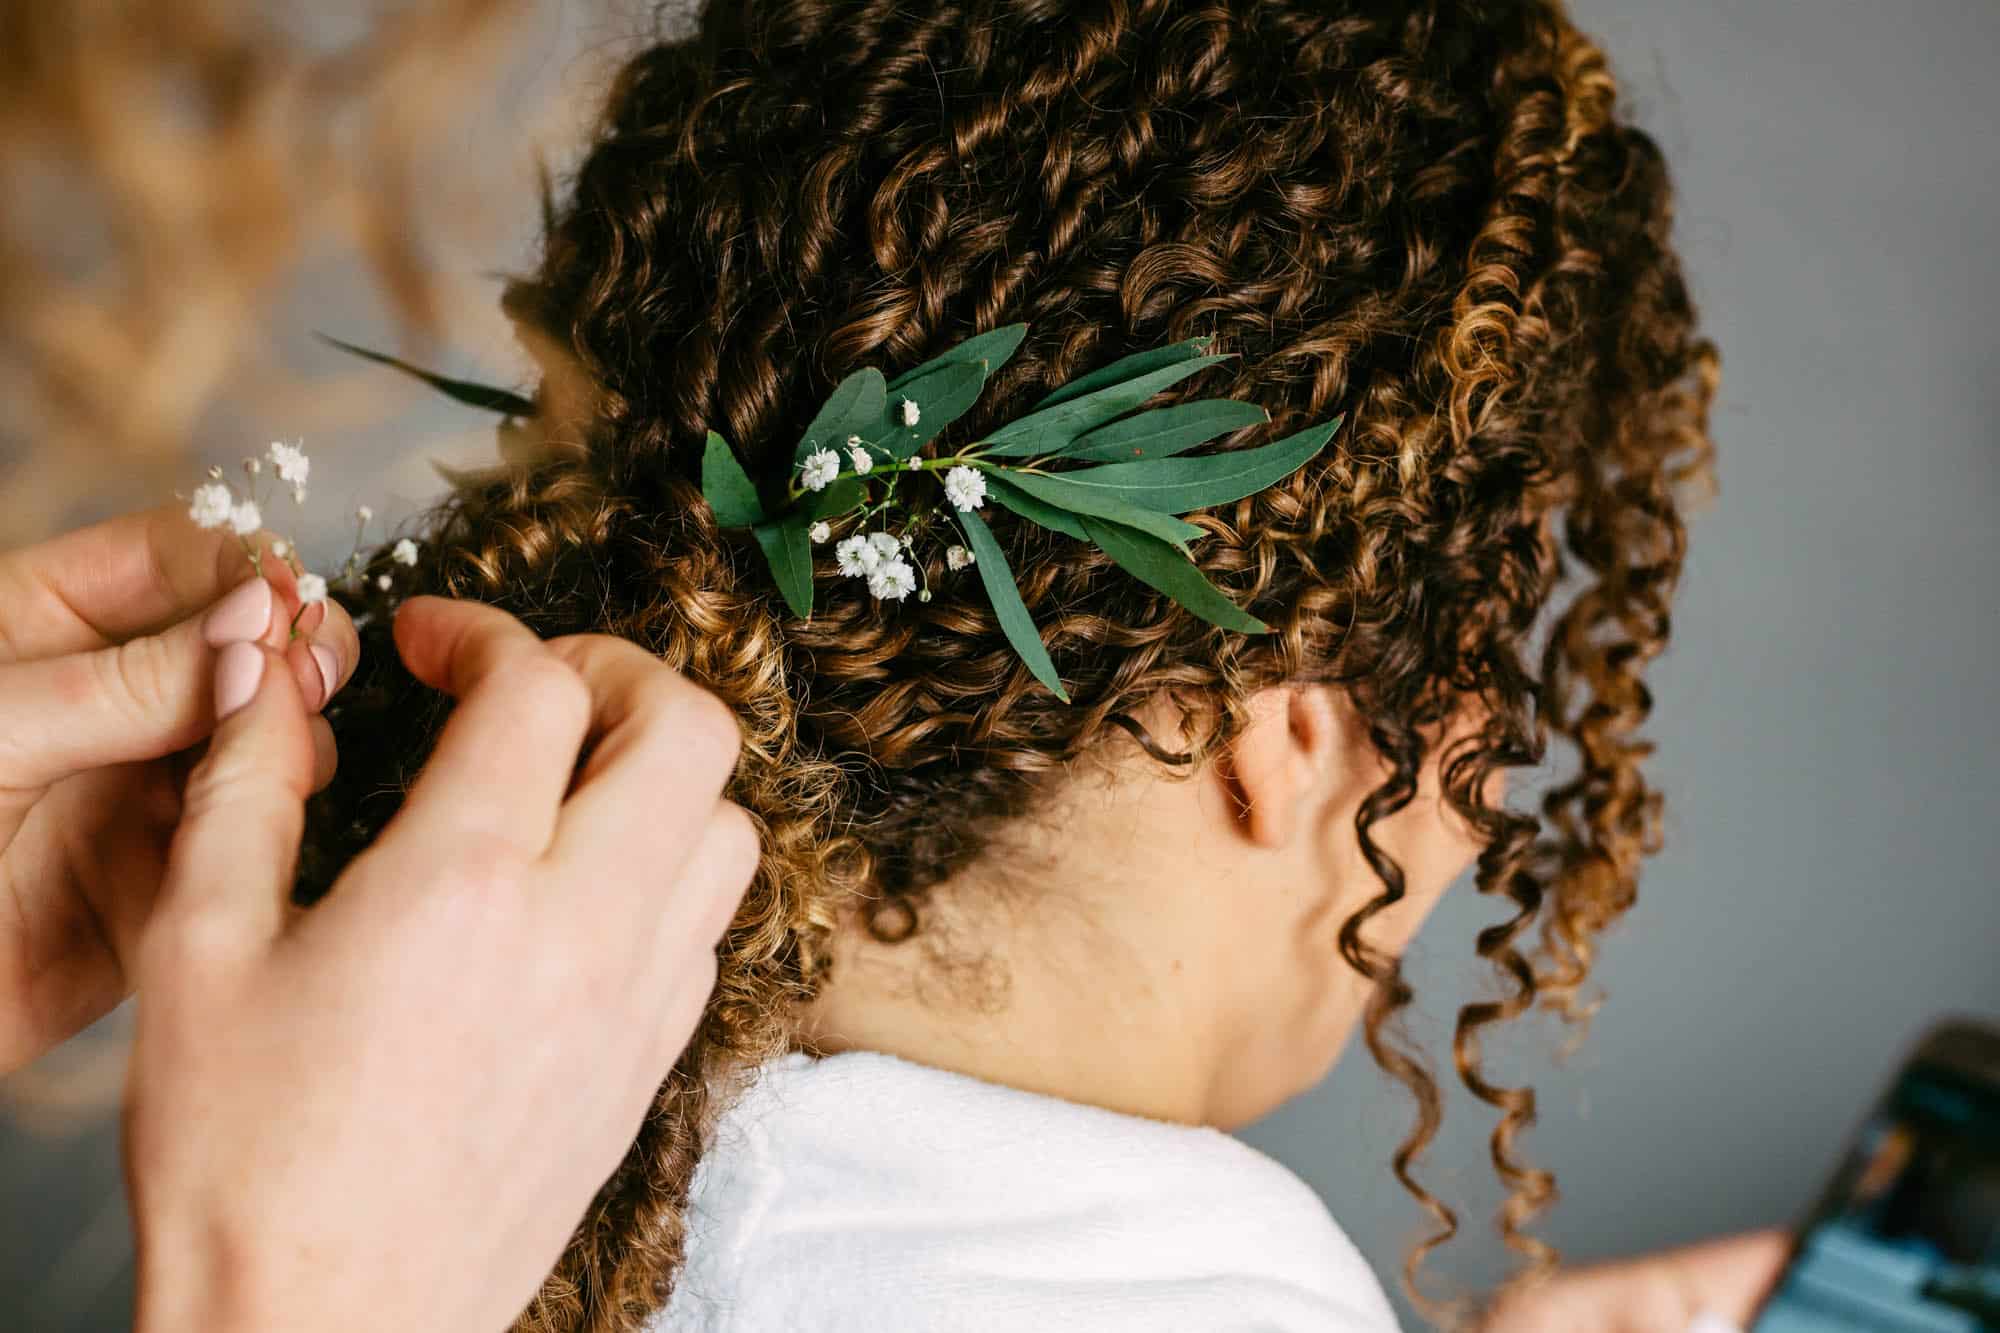 A woman has her hair cut in a bohemian wedding dress at a wedding.